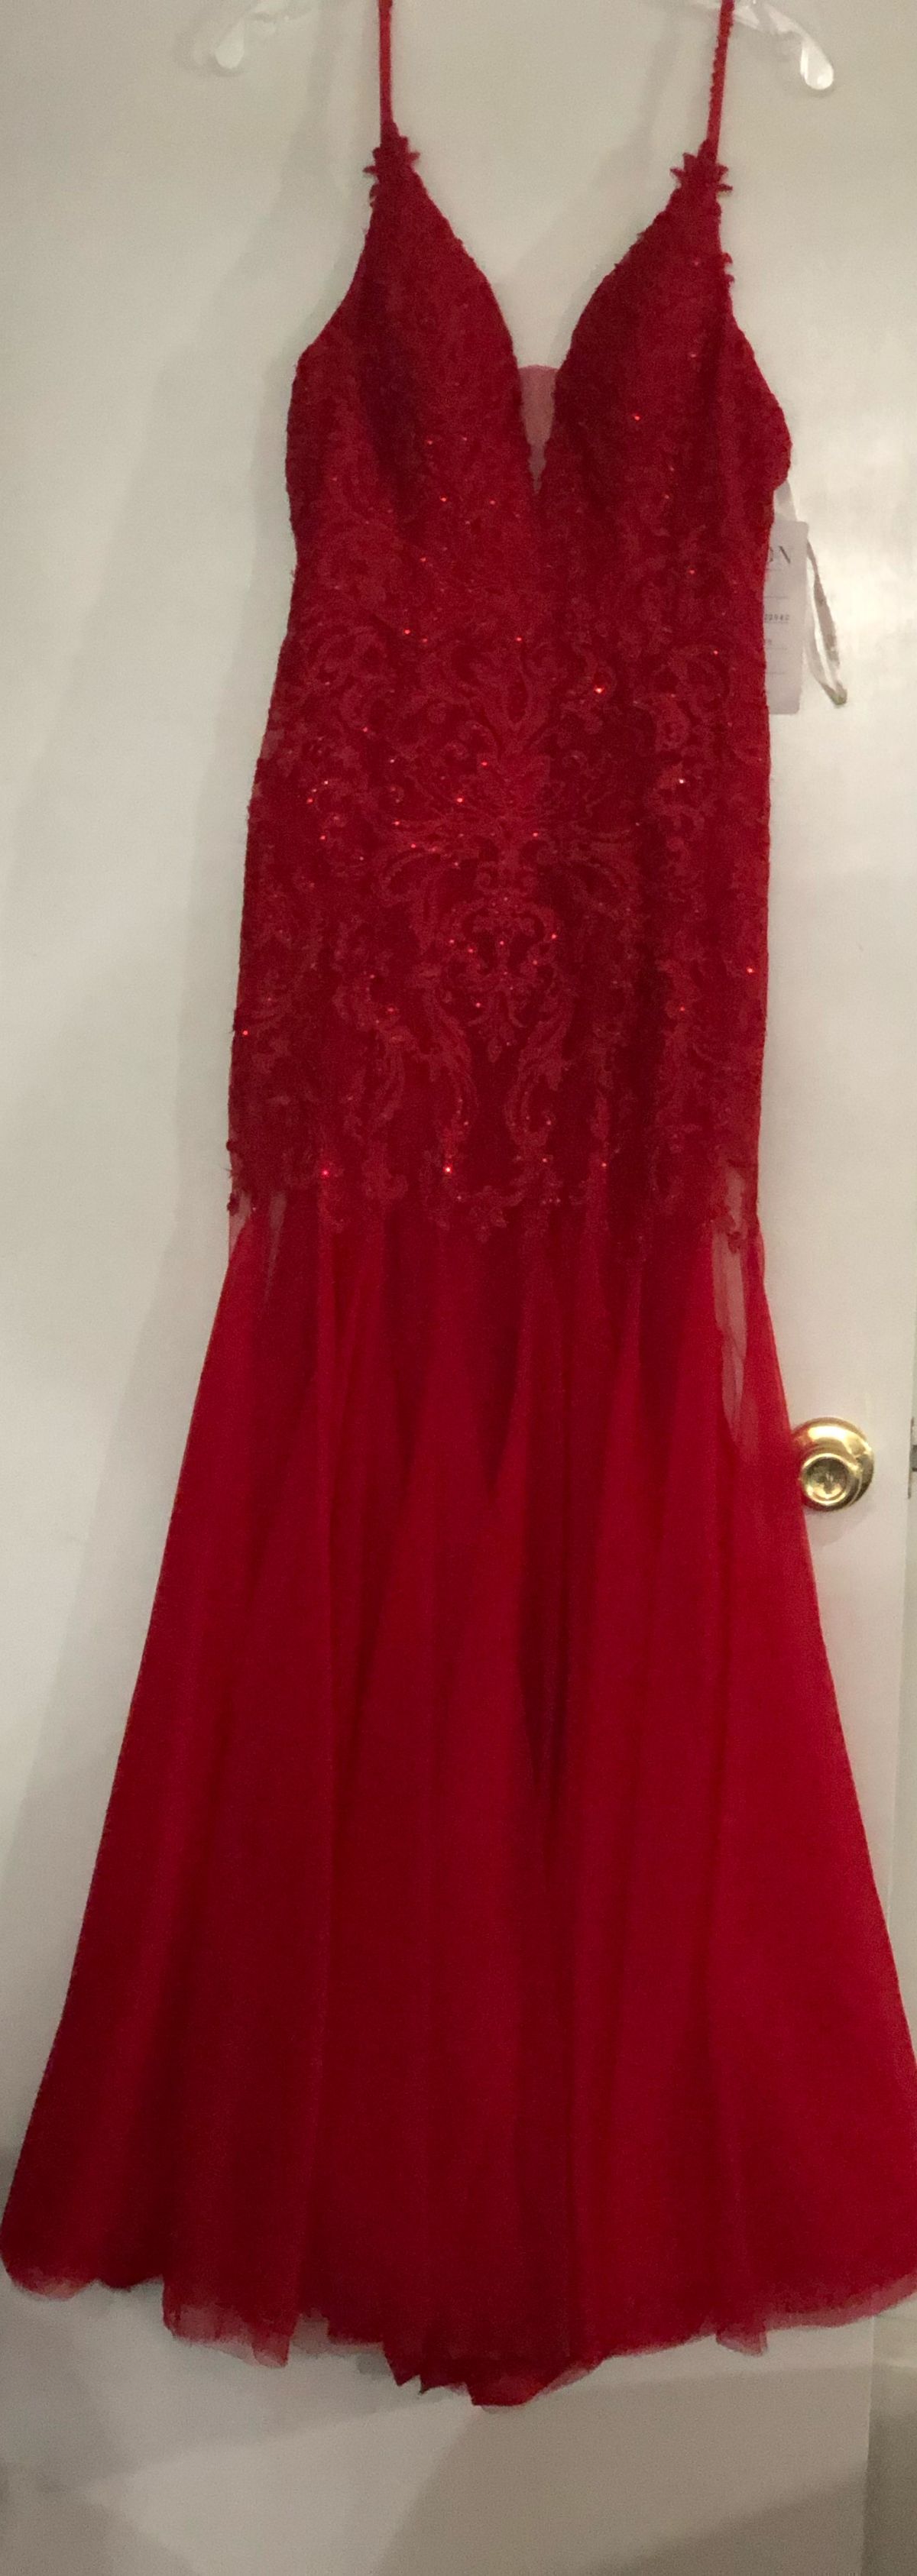 Ellie Wilde Size 2 Red Mermaid Dress on Queenly